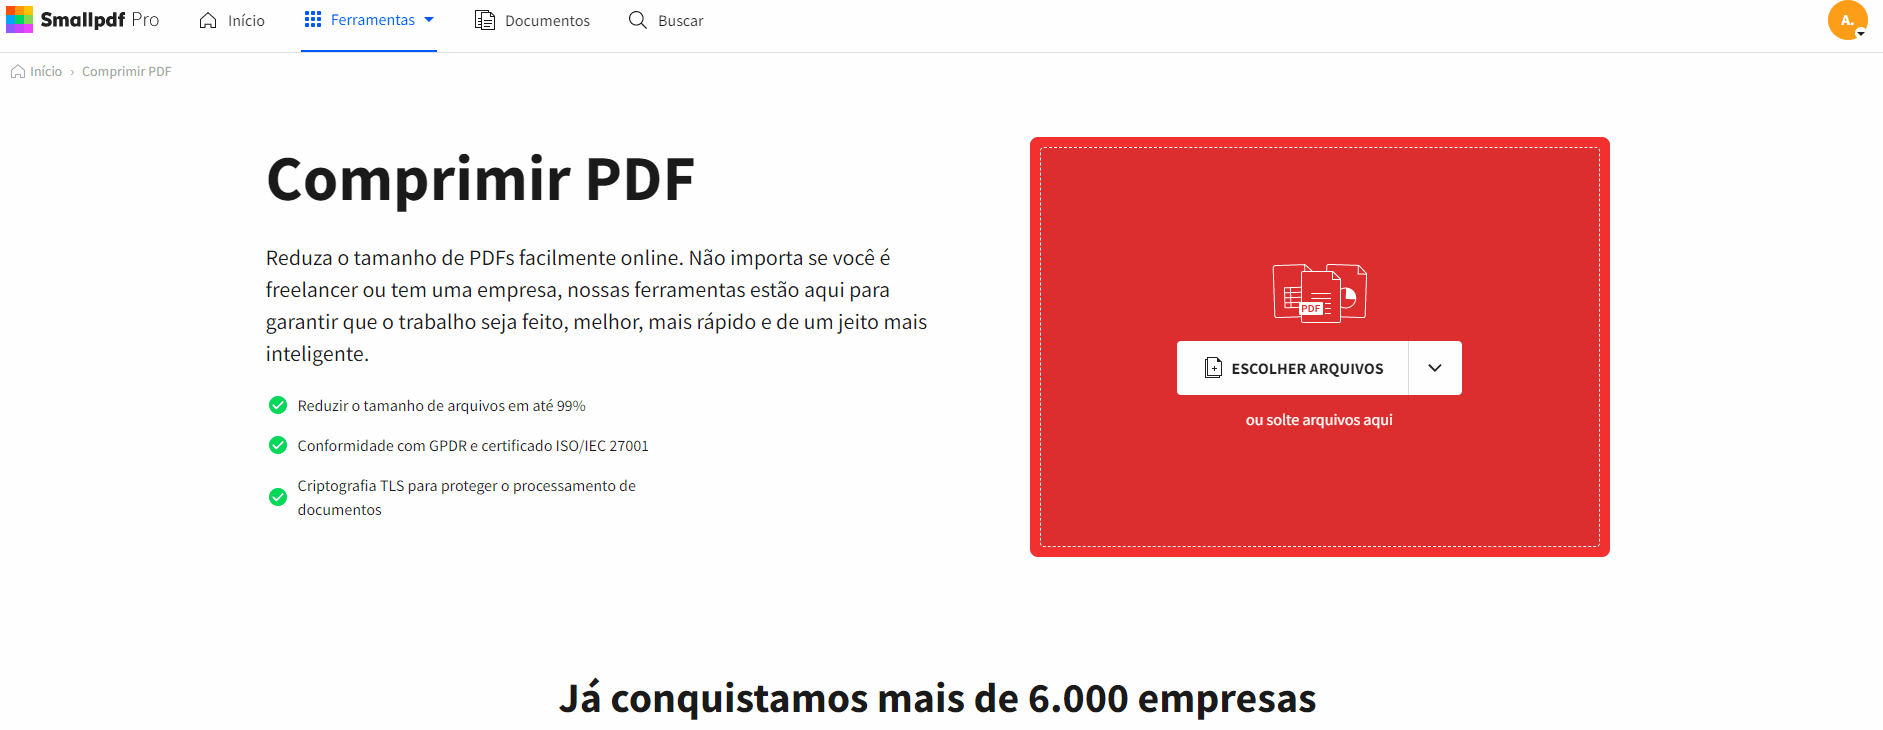 Comprimir PDF online em um tamanho escolhido